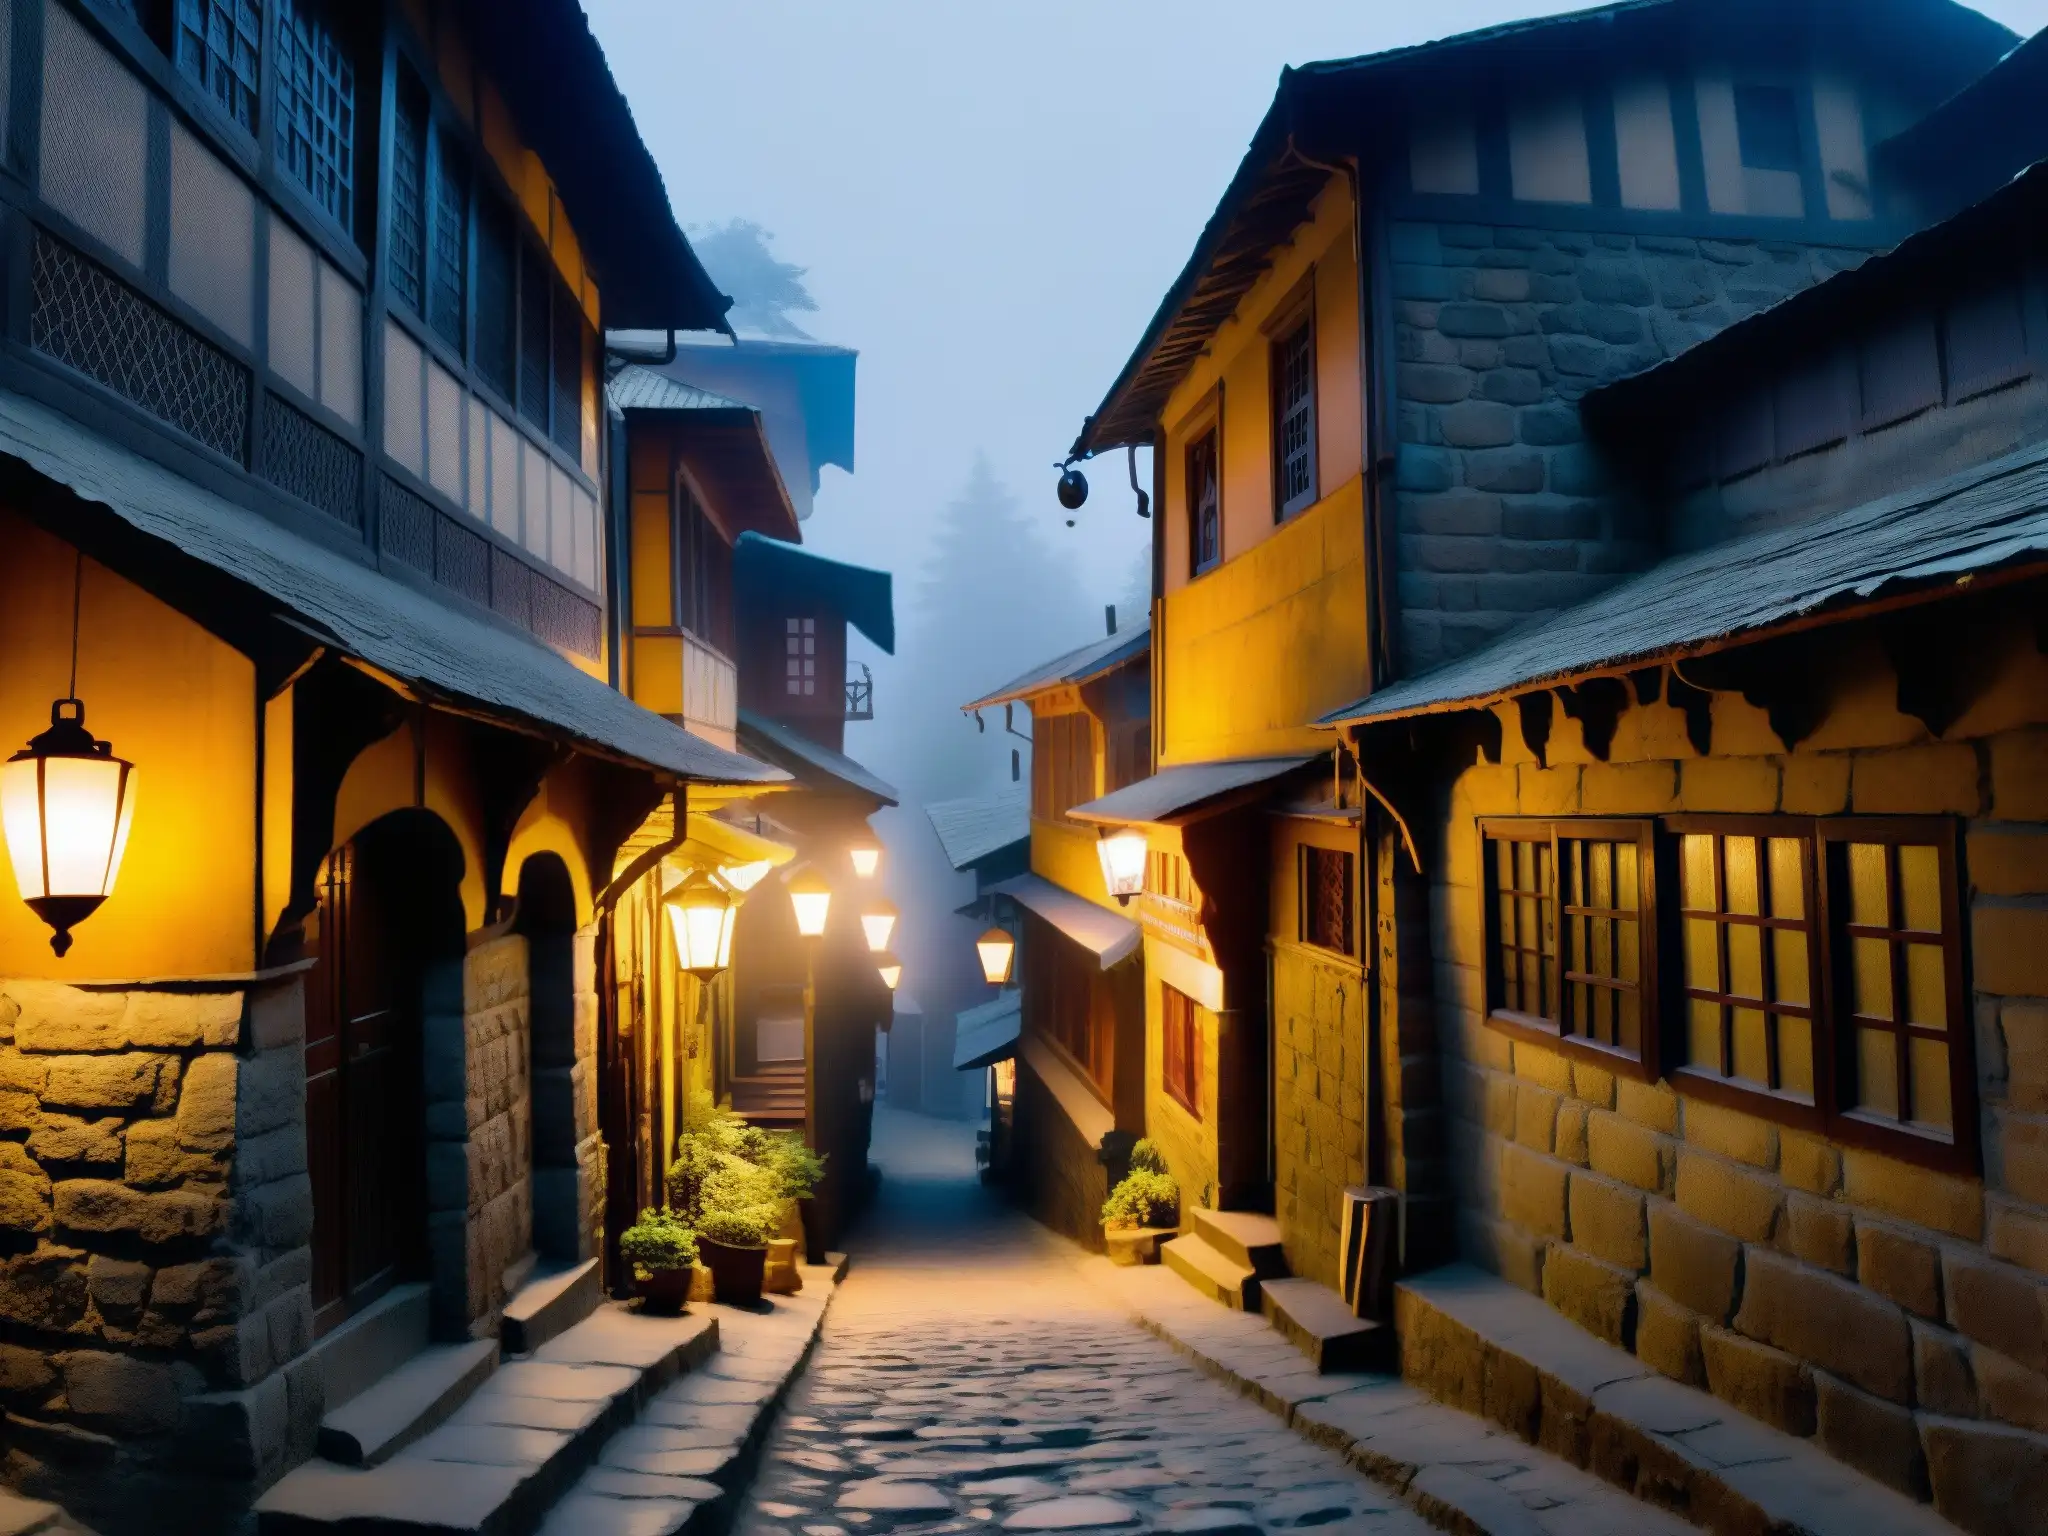 Un misterioso Pasaje de los Lamentos en Shimla: un estrecho callejón iluminado por tenues faroles, envuelto en neblina y rodeado de antiguos edificios